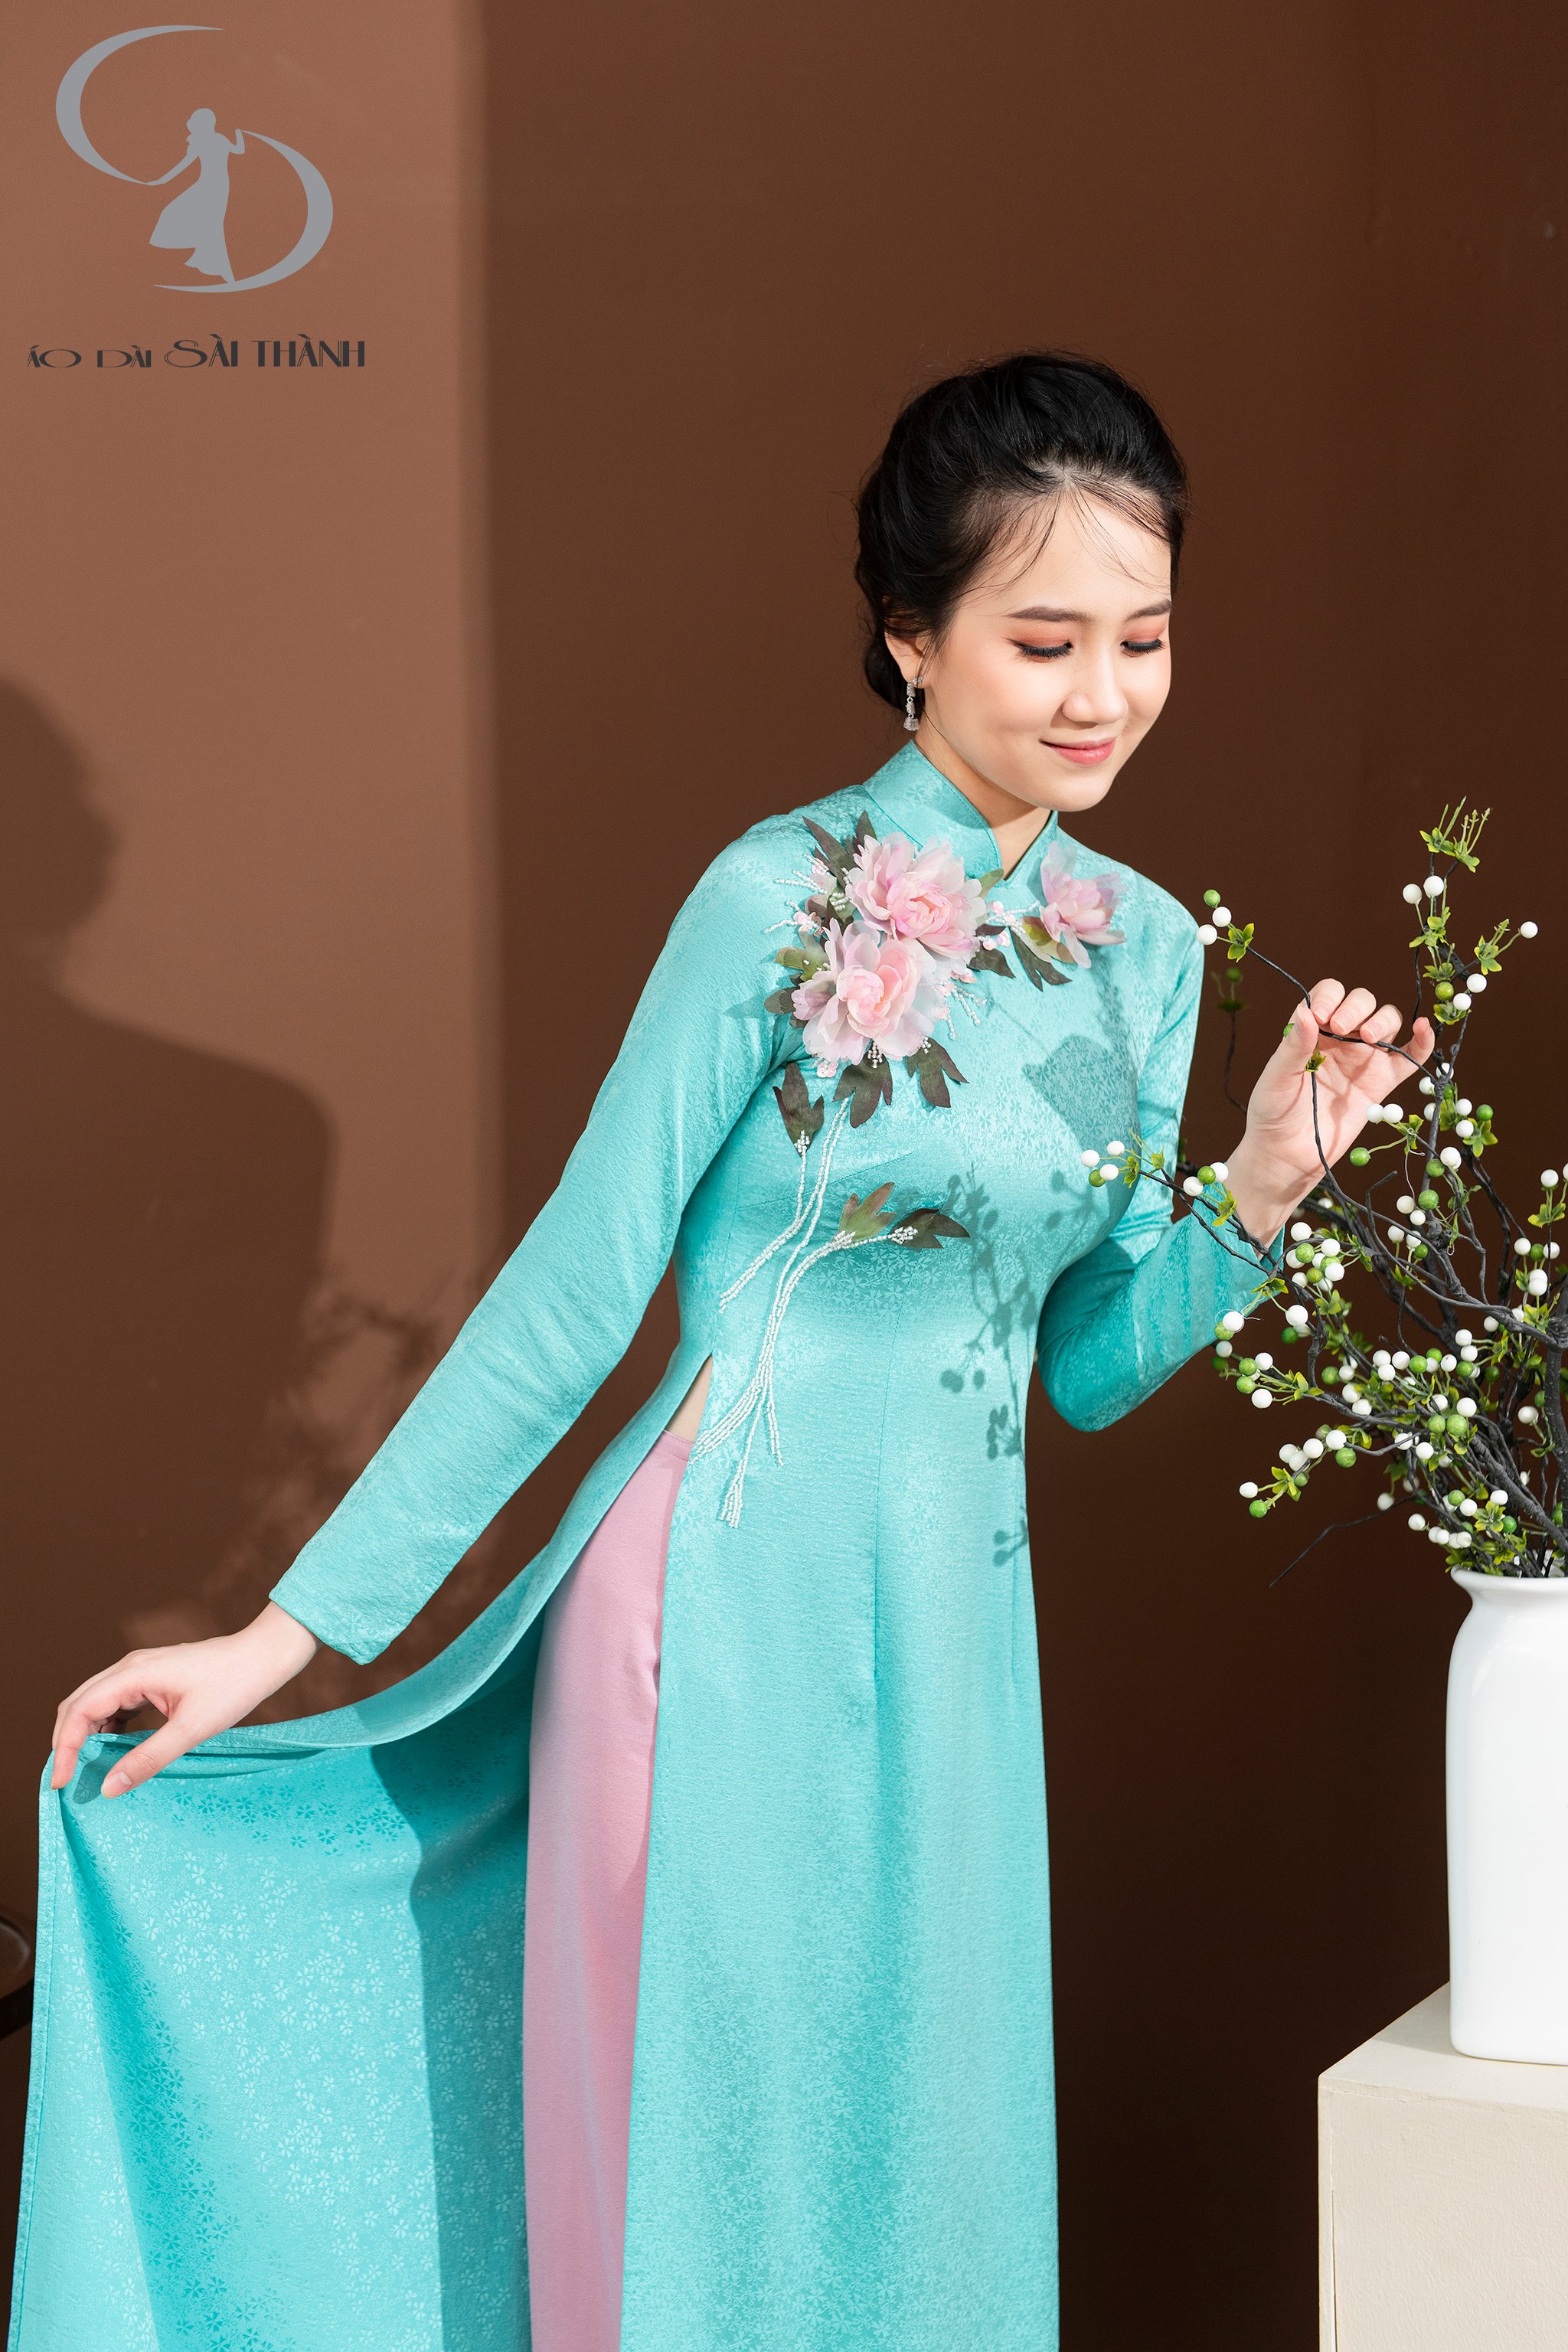 Thiết kế của  Áo dài Sài Thành thường hướng đến sự sang trọng, tinh tế. Dù những mẫu cách tân trẻ trung nhưng cũng không mất đi sự thanh lịch, kín đáo vốn có của một chiếc áo dài Việt Nam.